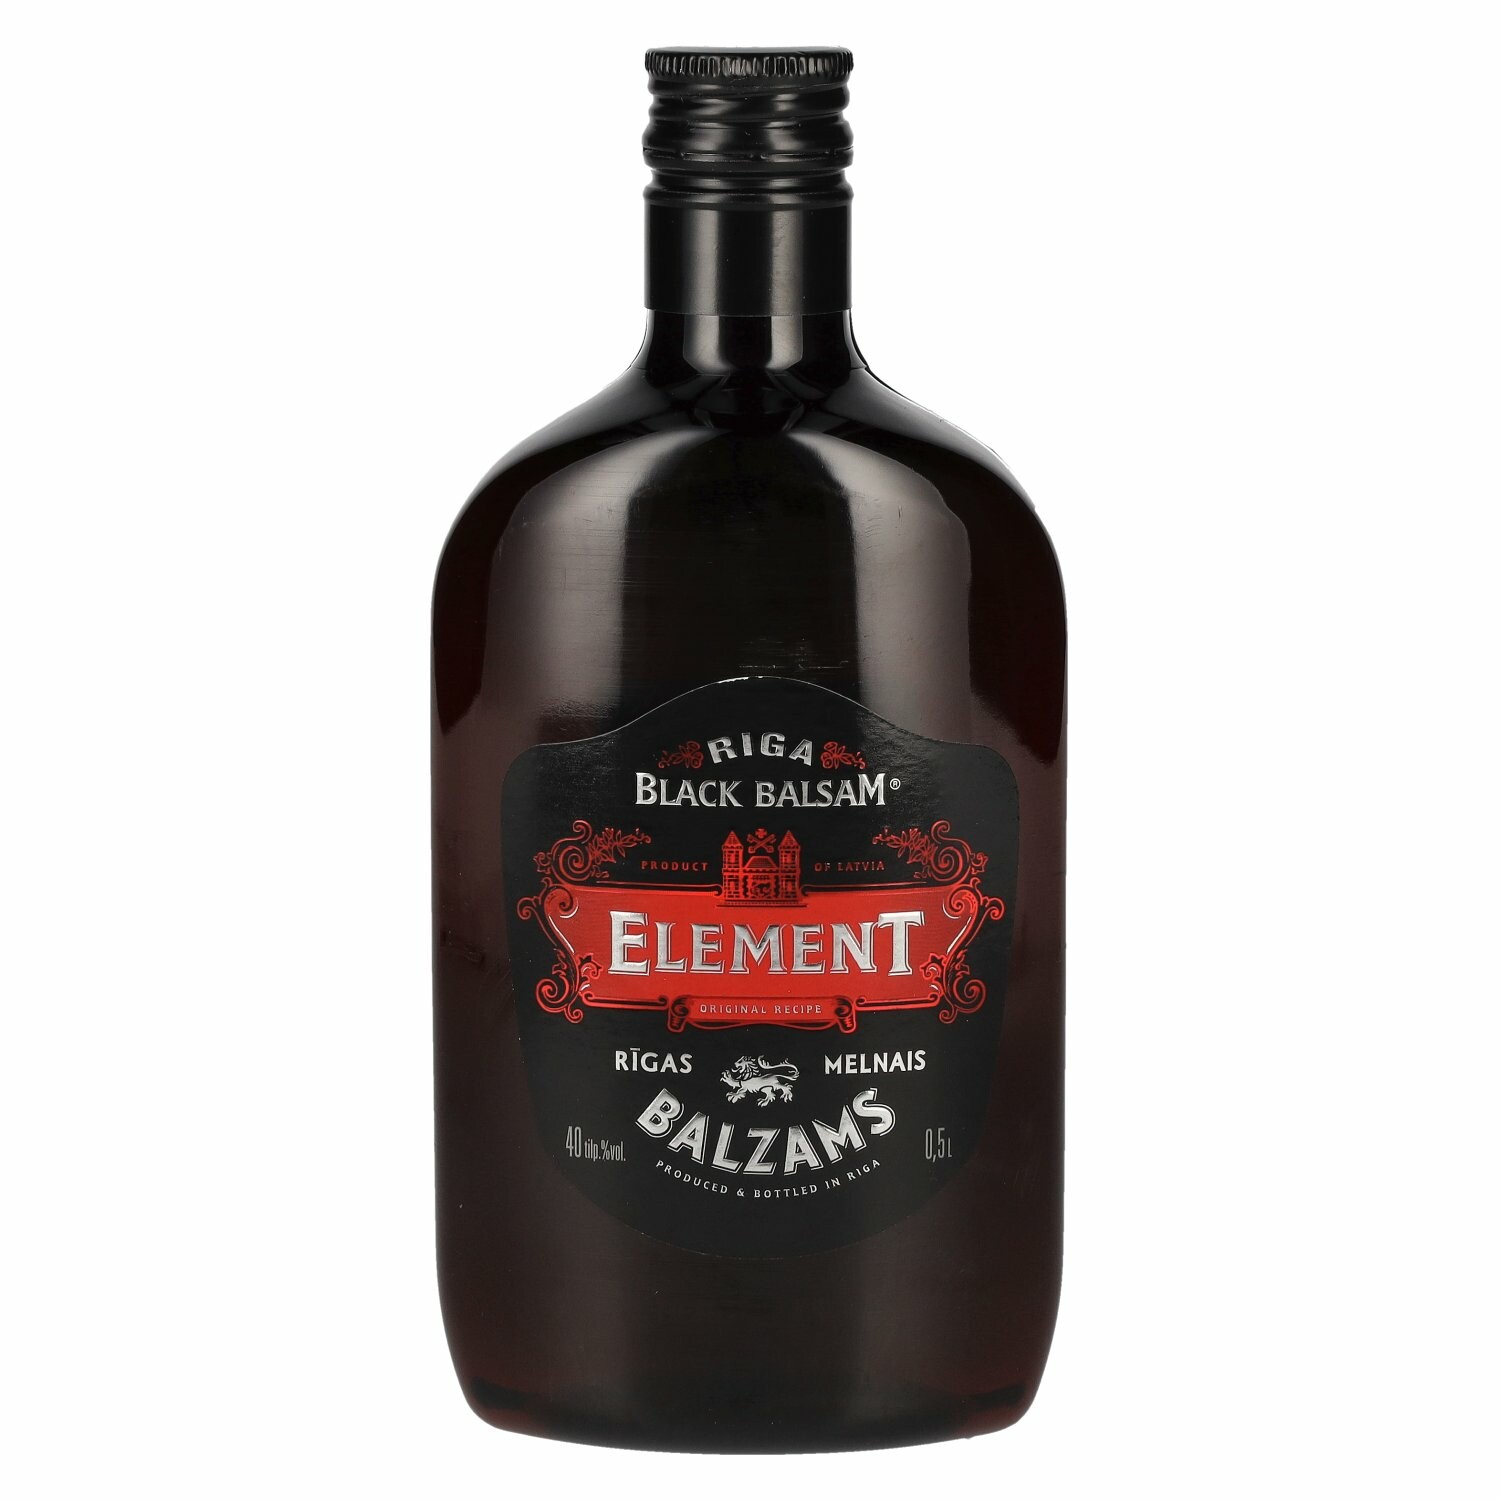 Riga Black Balsam Original Recipe ELEMENT PET 40% Vol. 0,5l